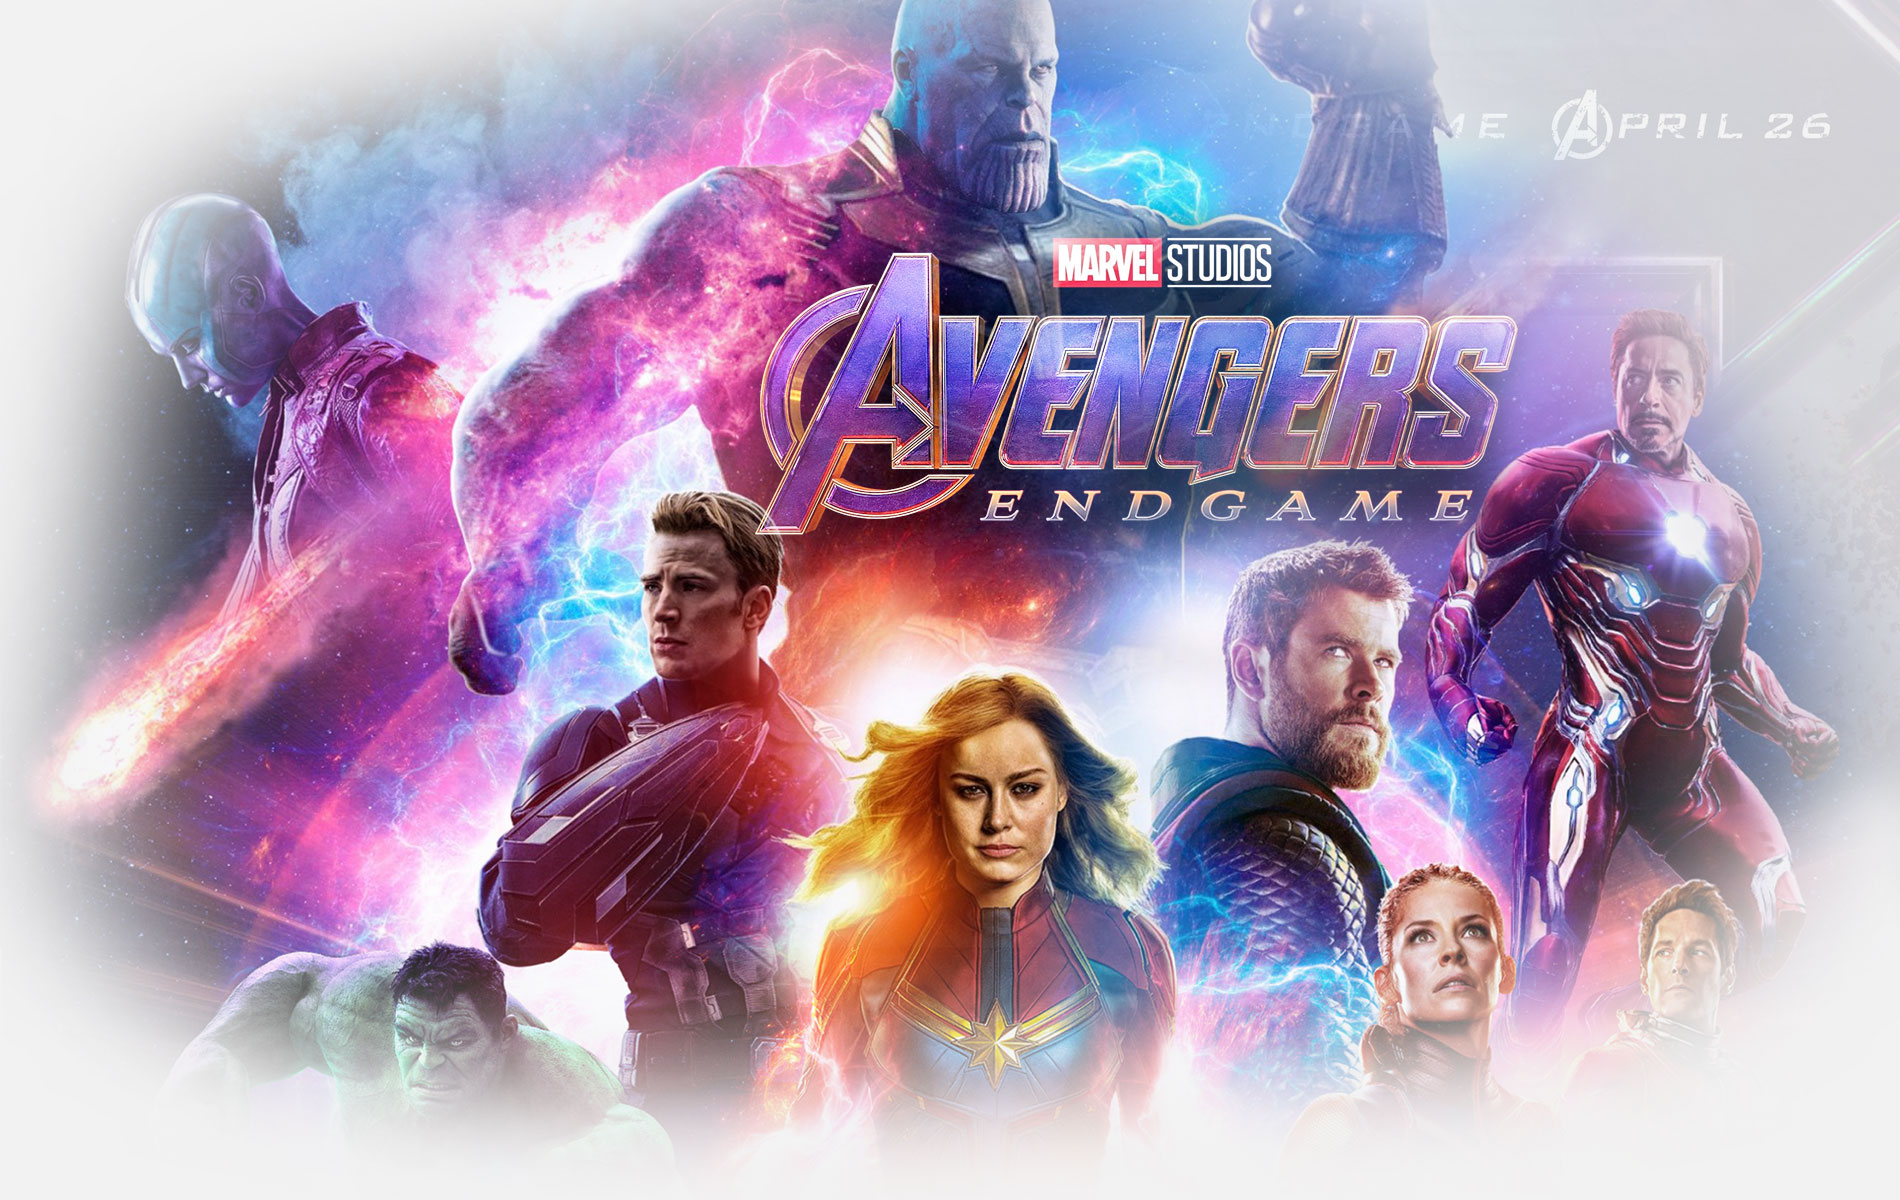 Avengers Endgame Wallpaper HD Movie Stream 4k Online